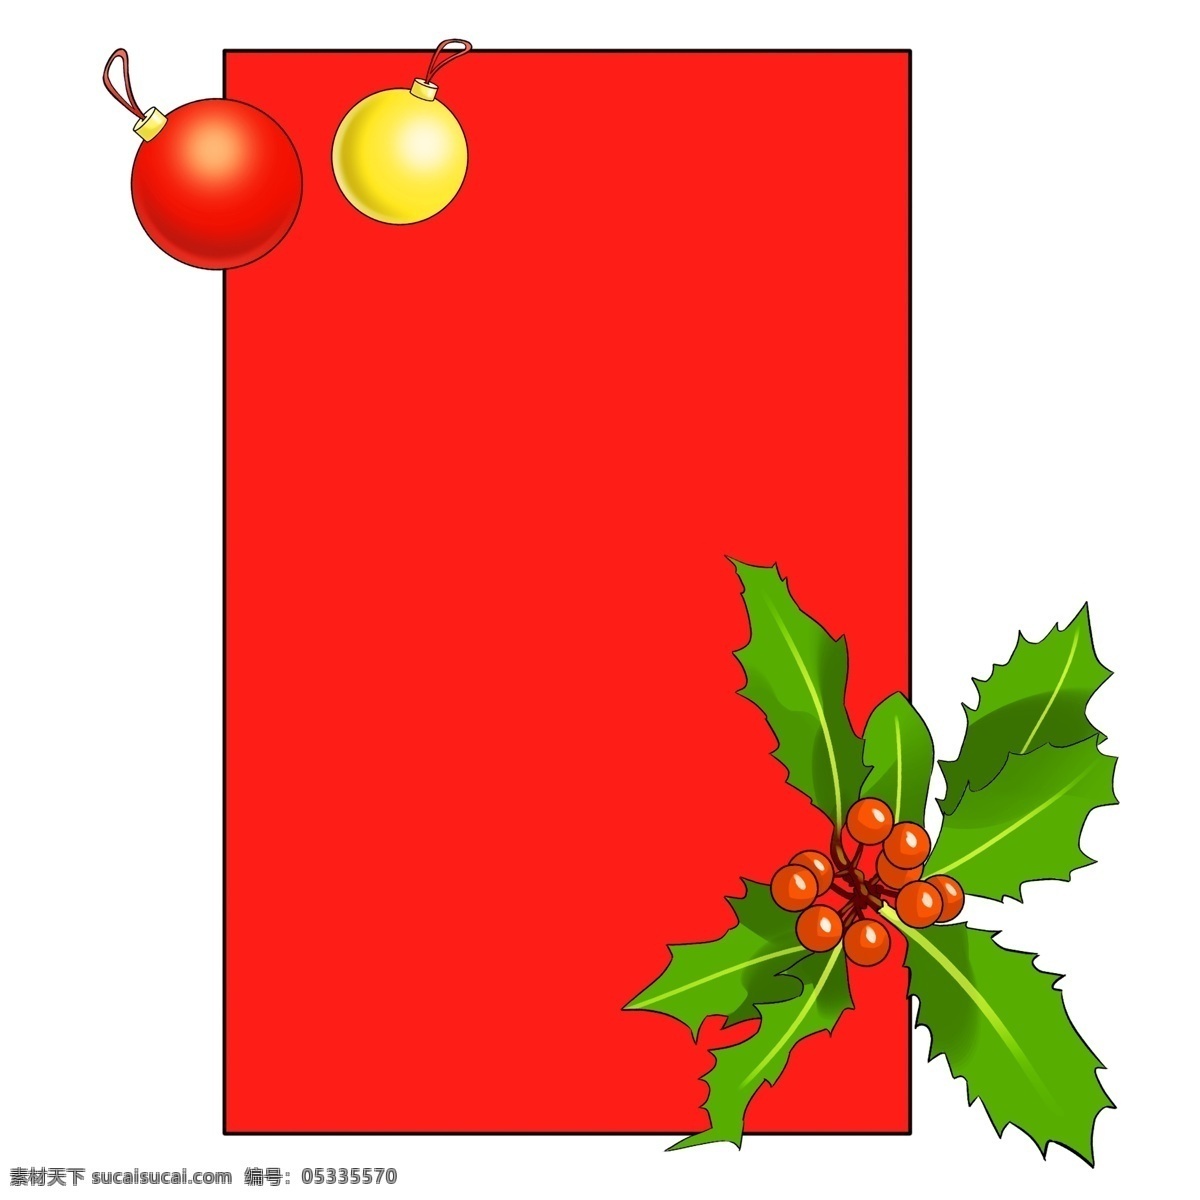 圣诞节 节日 边框 插画 红色边框 礼物 圣诞礼物 绿叶 圣诞节边框 红色彩球 手绘边框插画